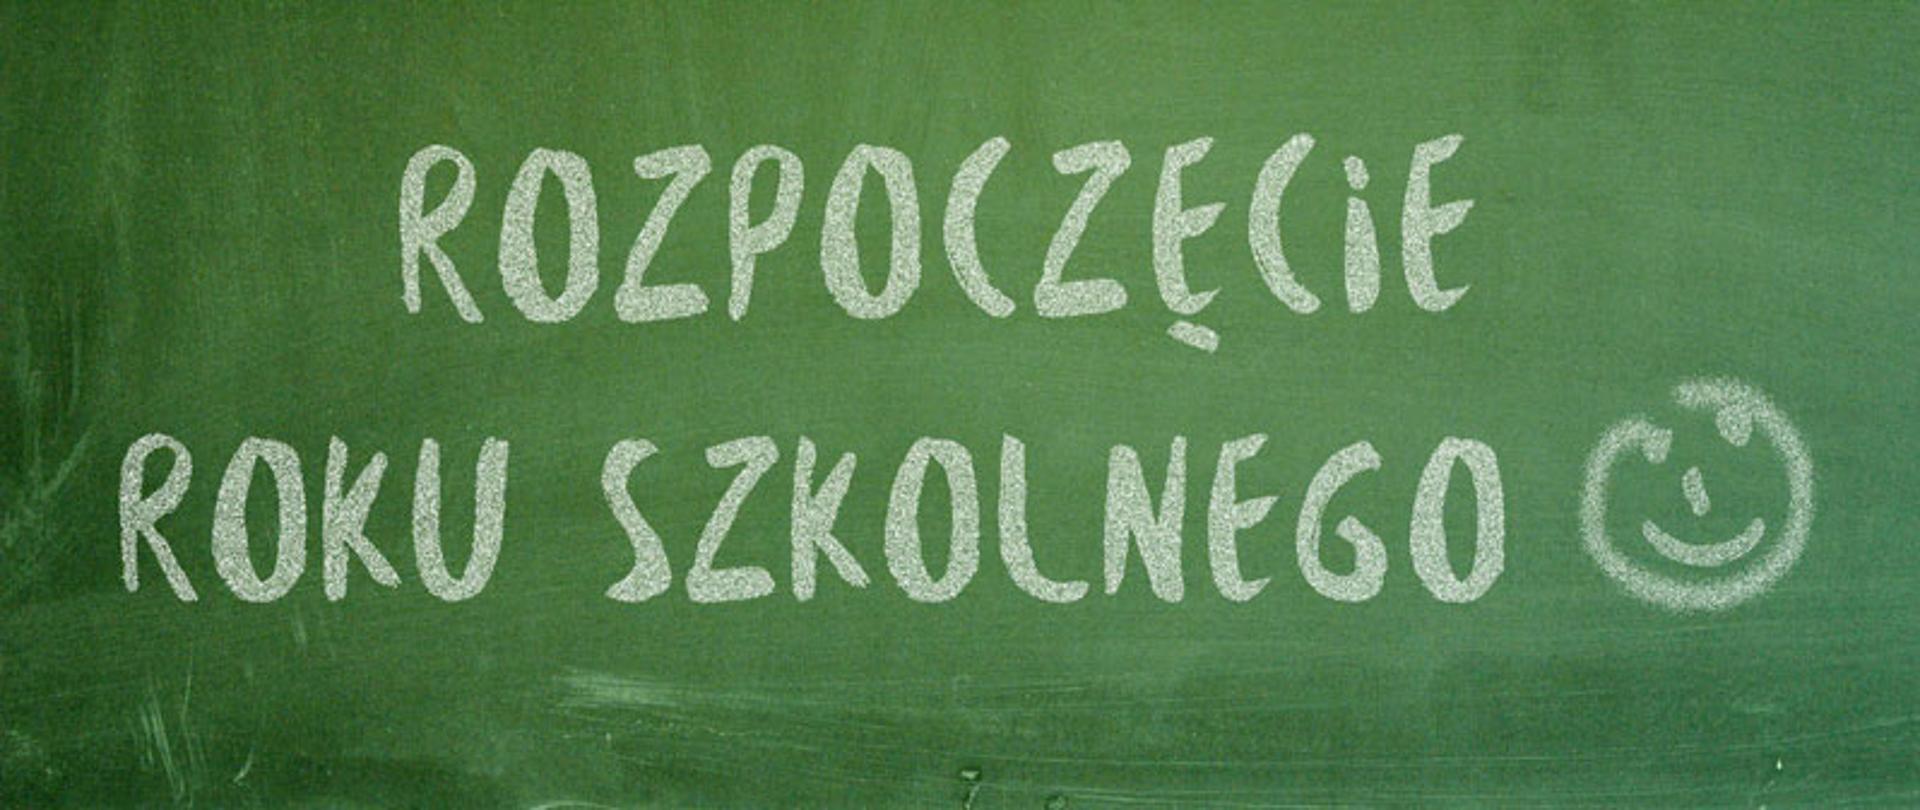 Klasyczna, zielona tablica szkolna z napisem wykonanym kredą "Rozpoczęcie roku szkolnego"